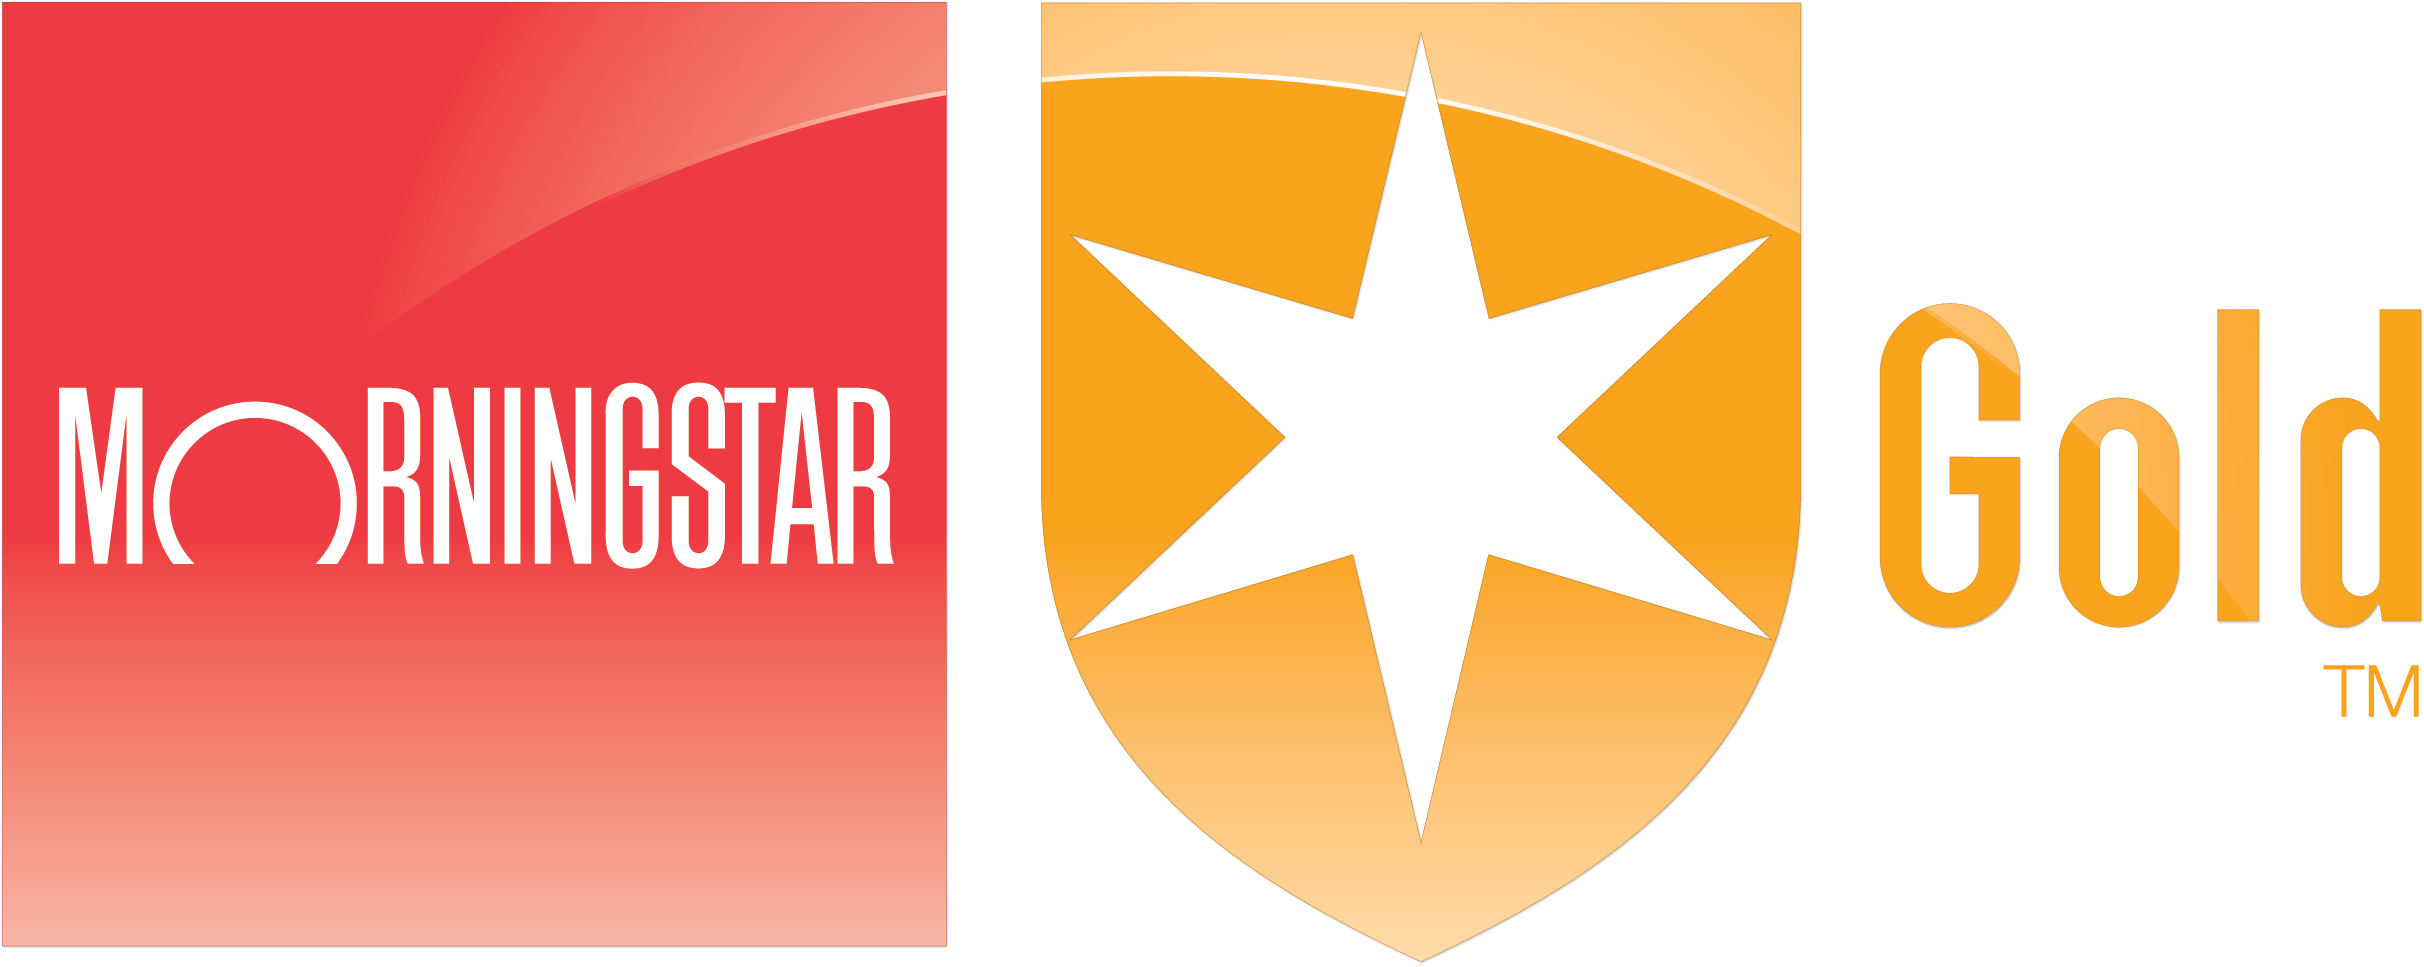 Red Morningstar Logo and Morningstar Gold Analyst Rating Emblem